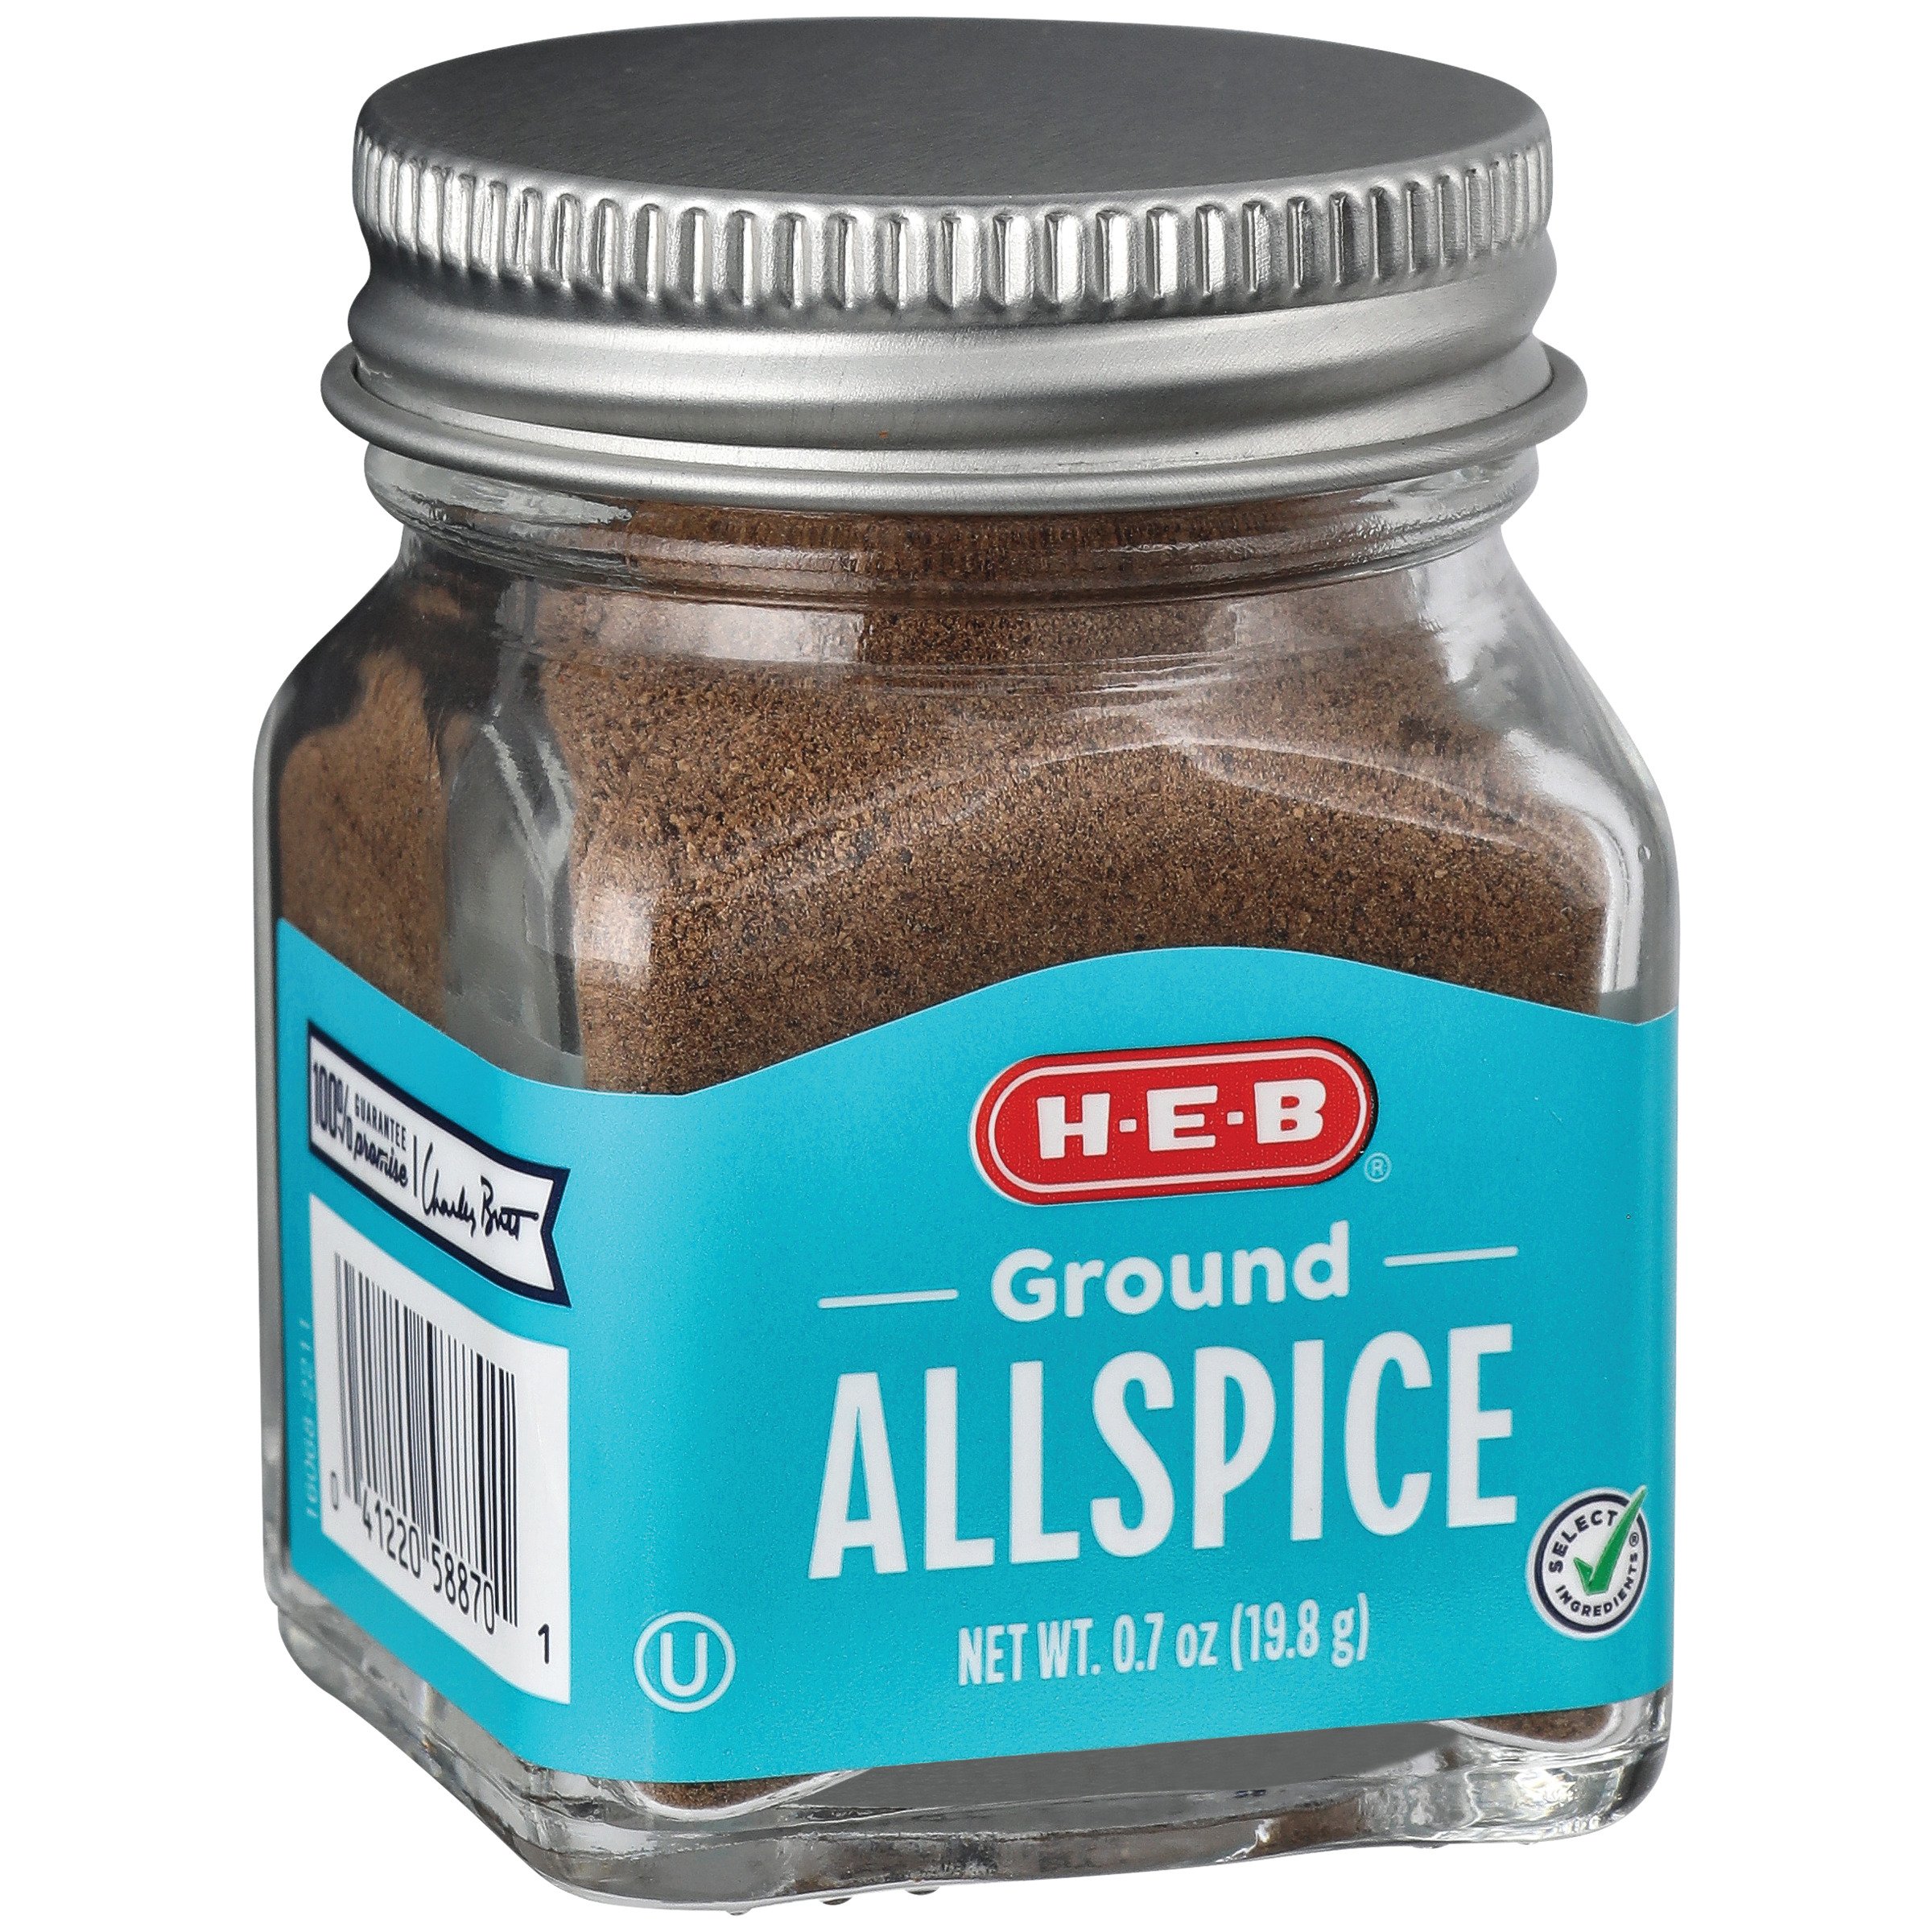 H-E-B Ground Allspice